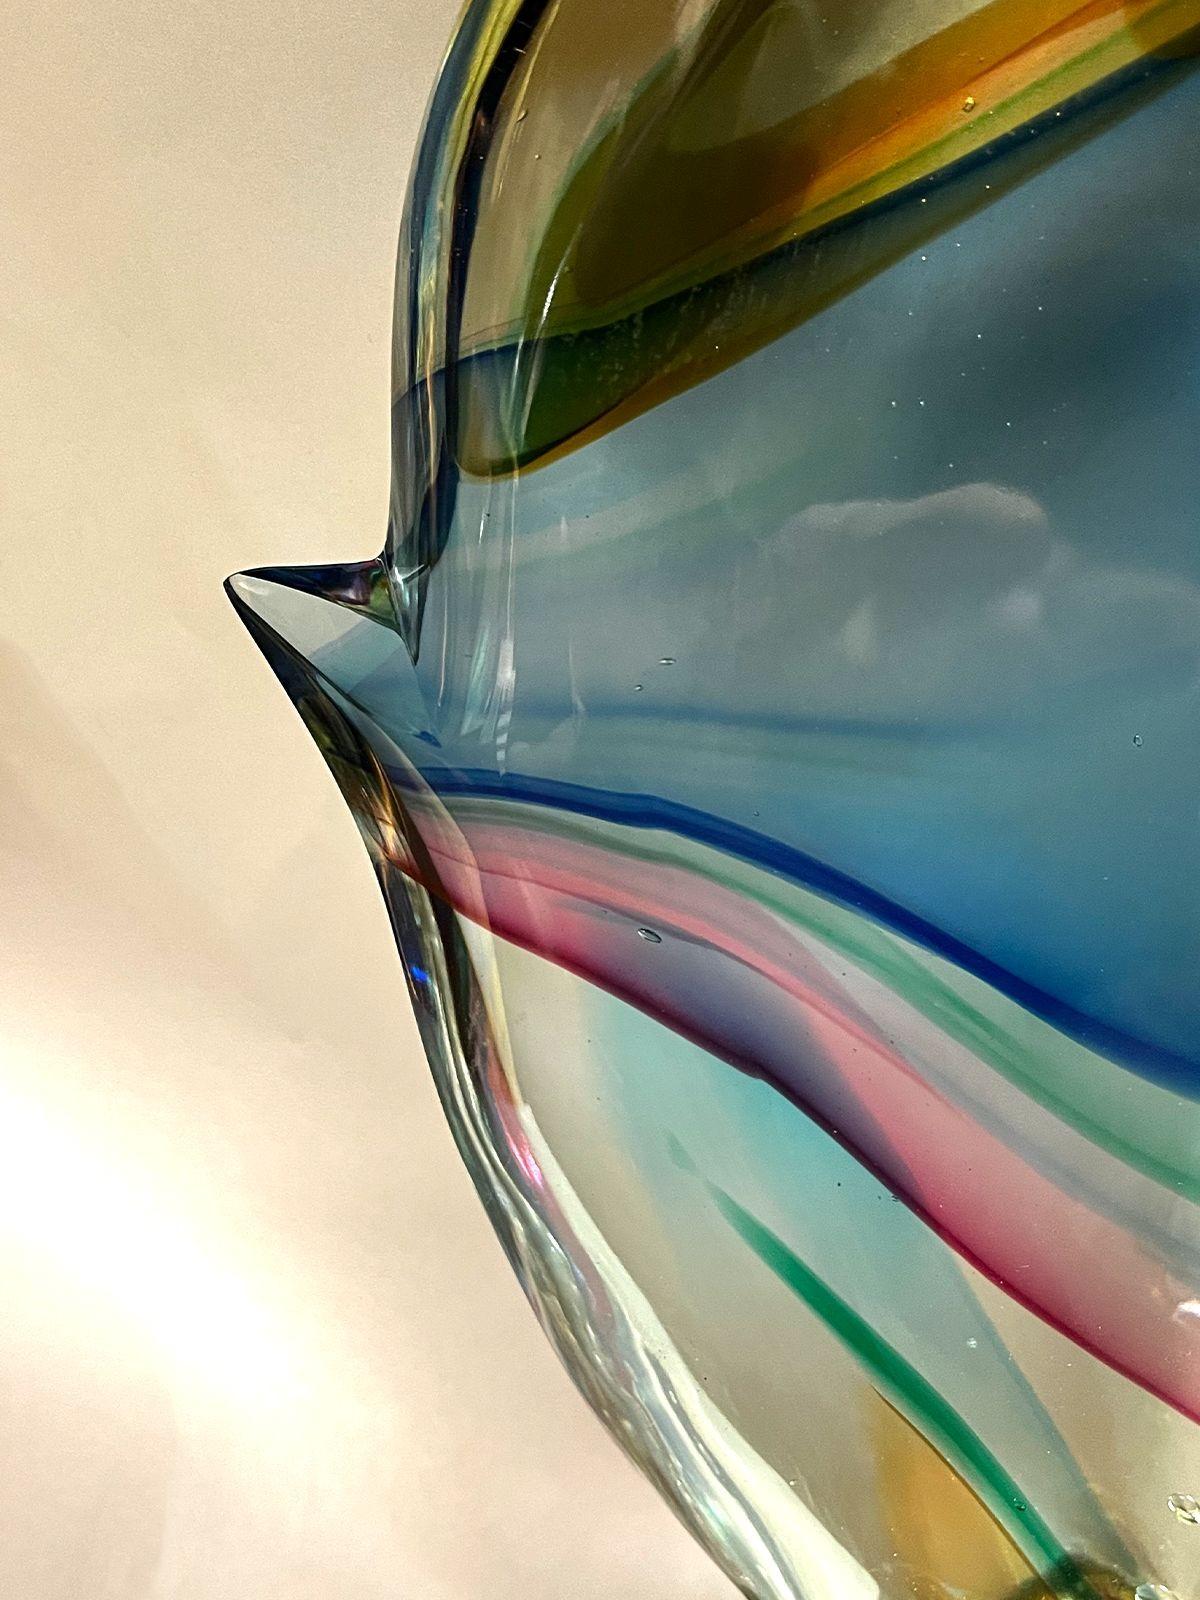 Fischskulptur aus Murano-Glas von Sergio Costantini für Vetro Artistico Murano mit gelben, blauen, bernsteinfarbenen und rosa Tönen. 
Hergestellt in Italien, 20. Jahrhundert (mit Aufkleber und Signatur).
Abmessungen:
24 